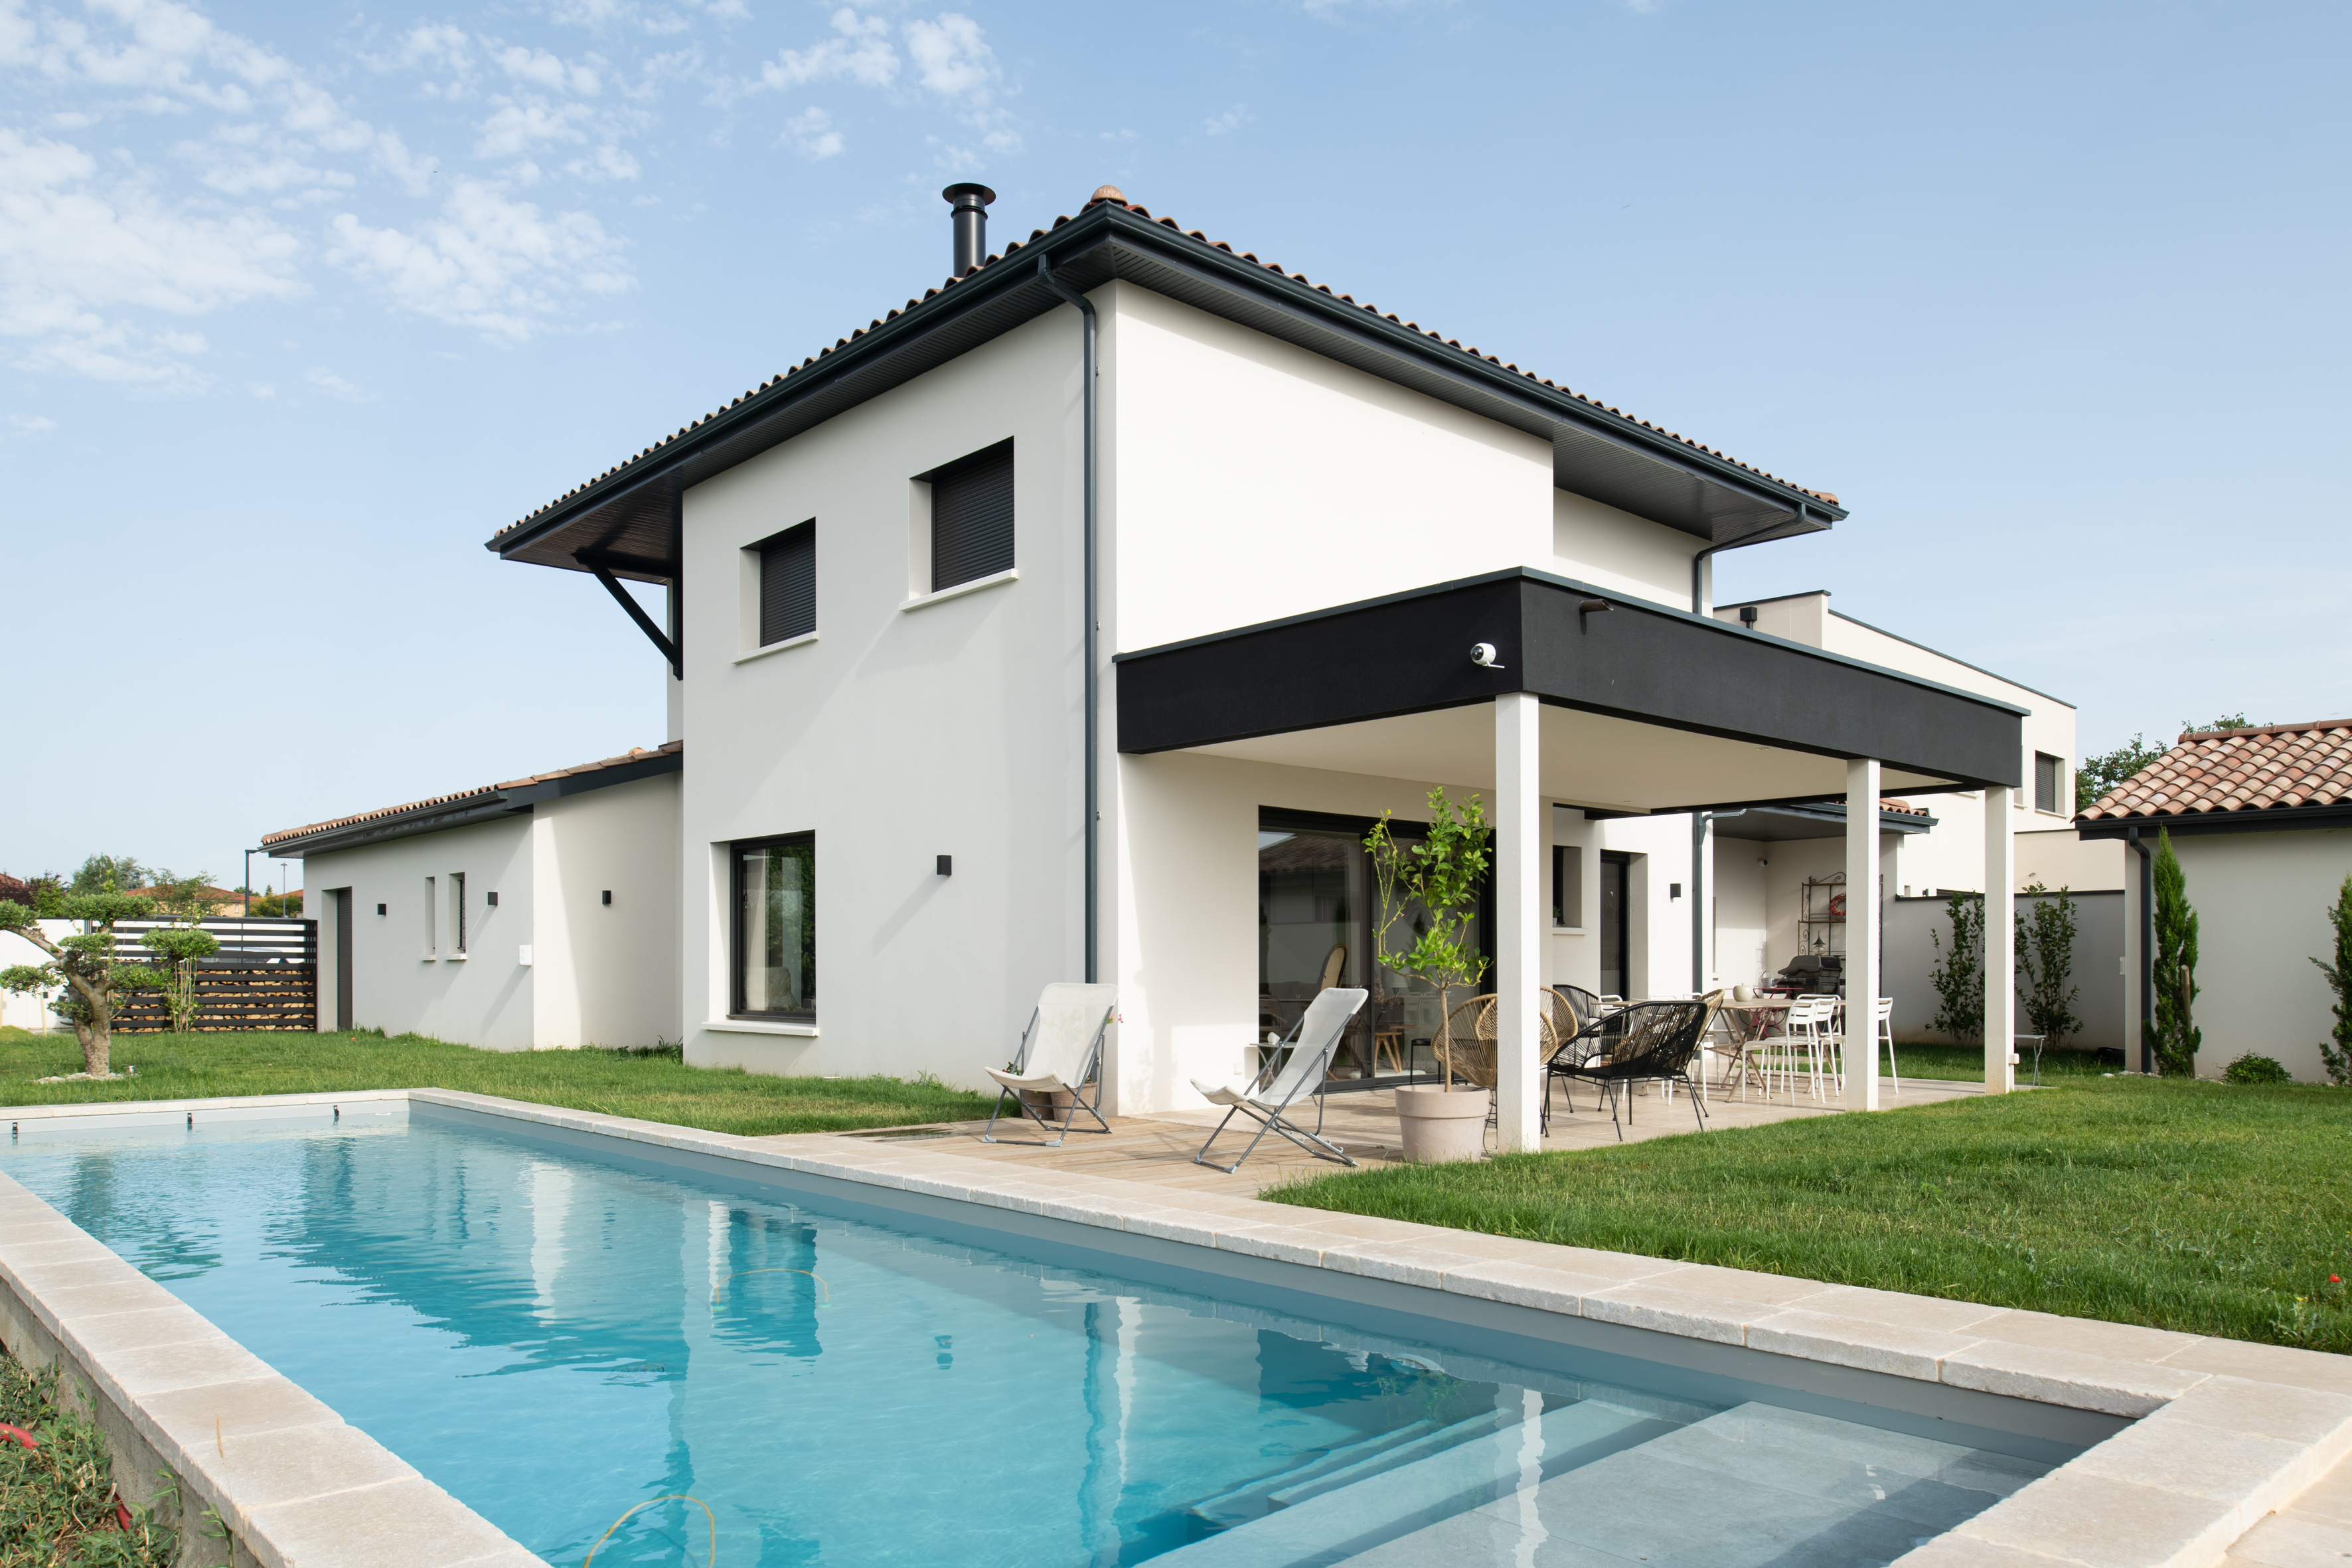 Villa architecte moderne sud ouest Lyon terrasse bois piscine